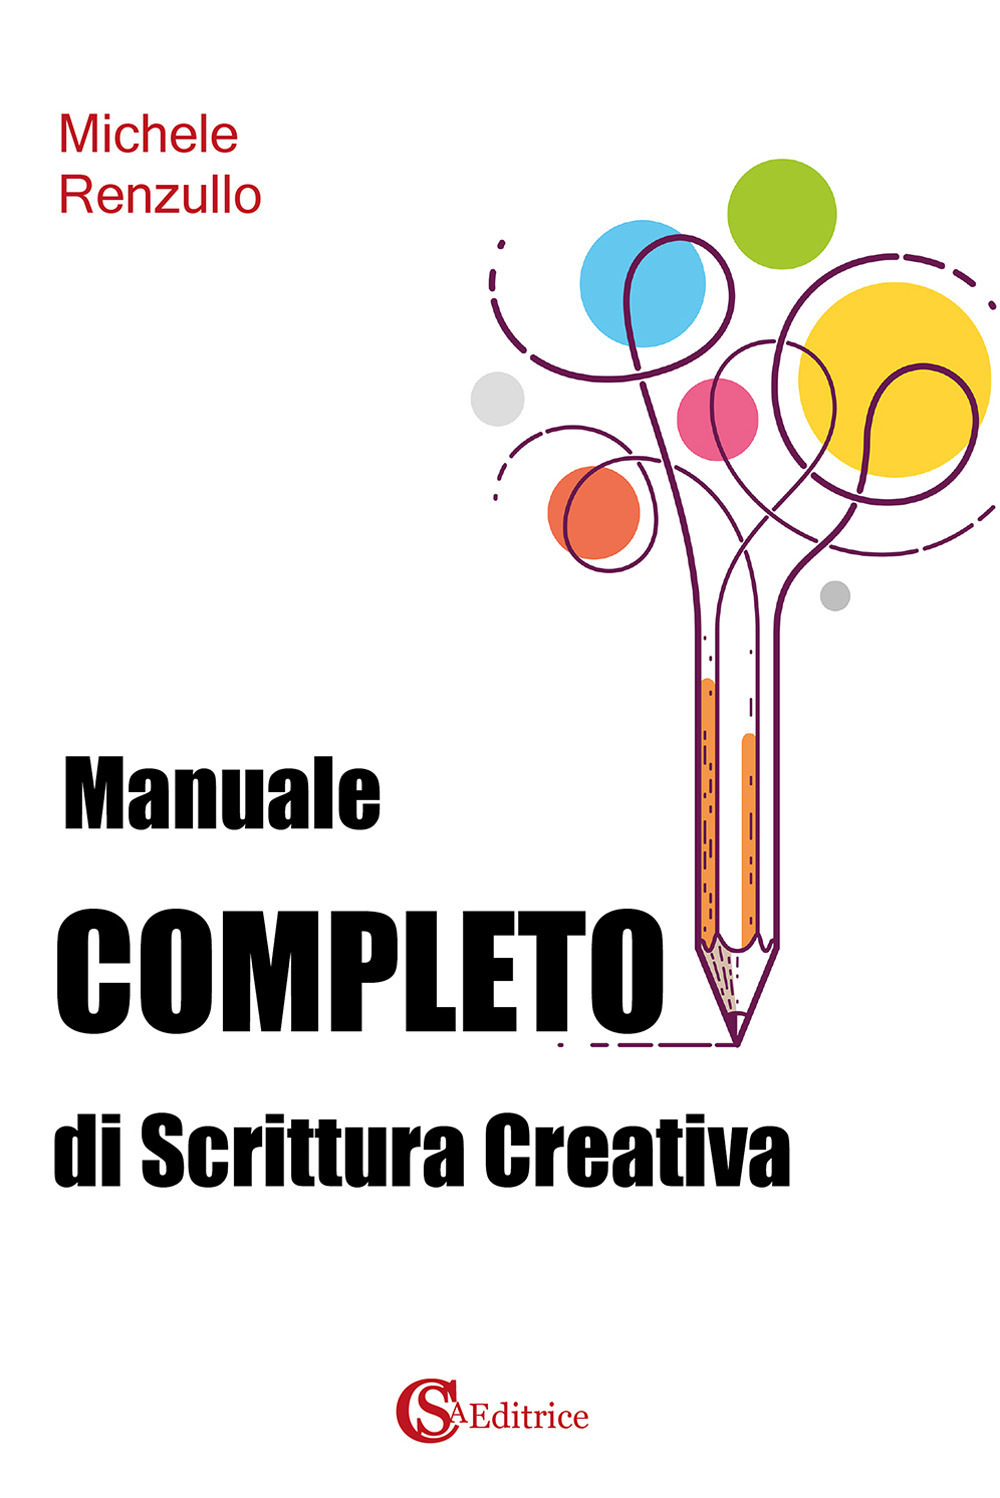 Libri Michele Renzullo - Manuale Completo Di Scrittura Creativa NUOVO SIGILLATO, EDIZIONE DEL 01/01/2021 SUBITO DISPONIBILE